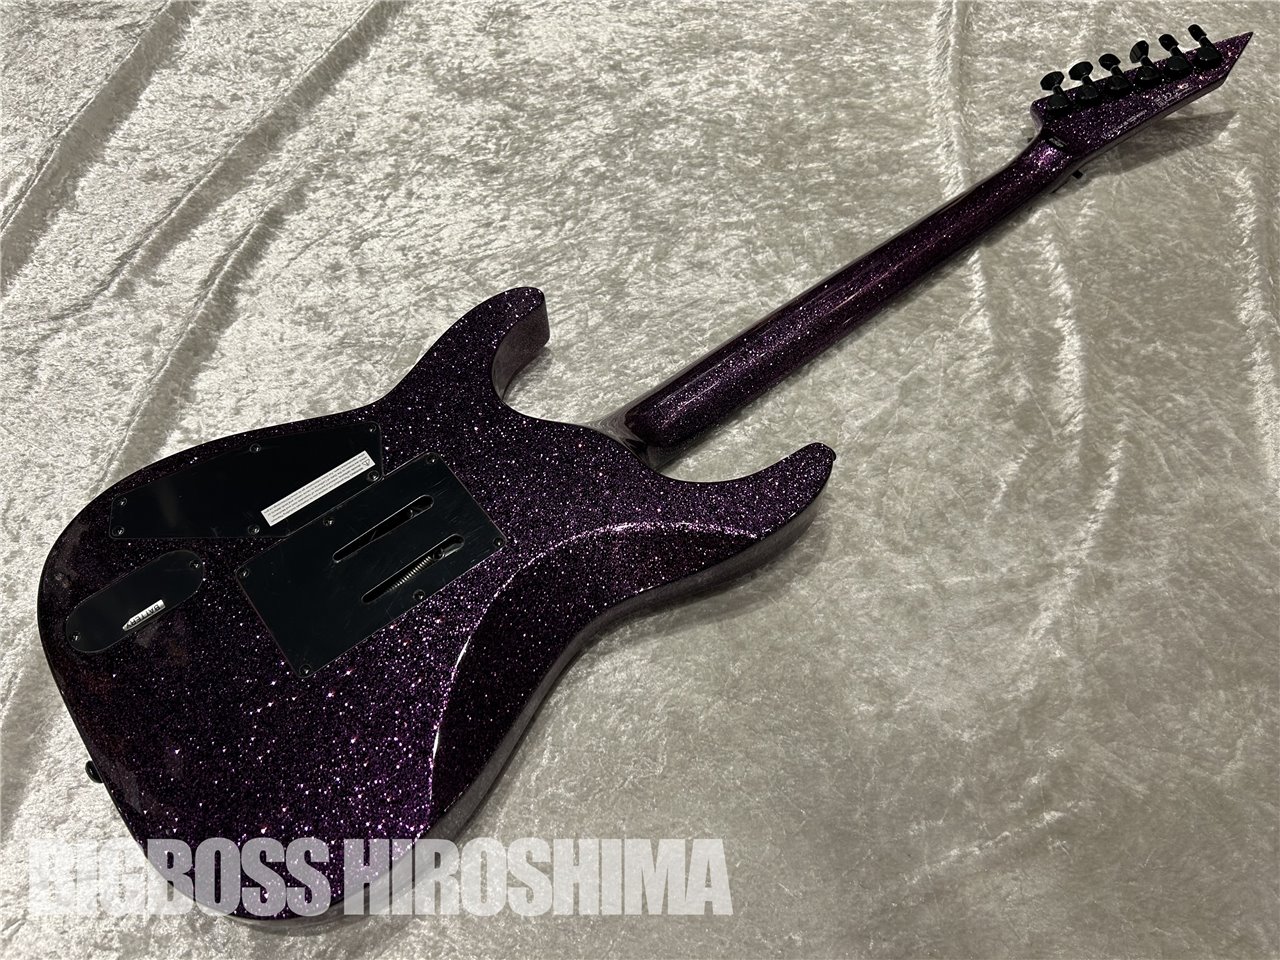 【即納可能】LTD(エルティーディー) KH-602 / Purple Sparkle (METALLICA/Kirk Hammettモデル) 広島店